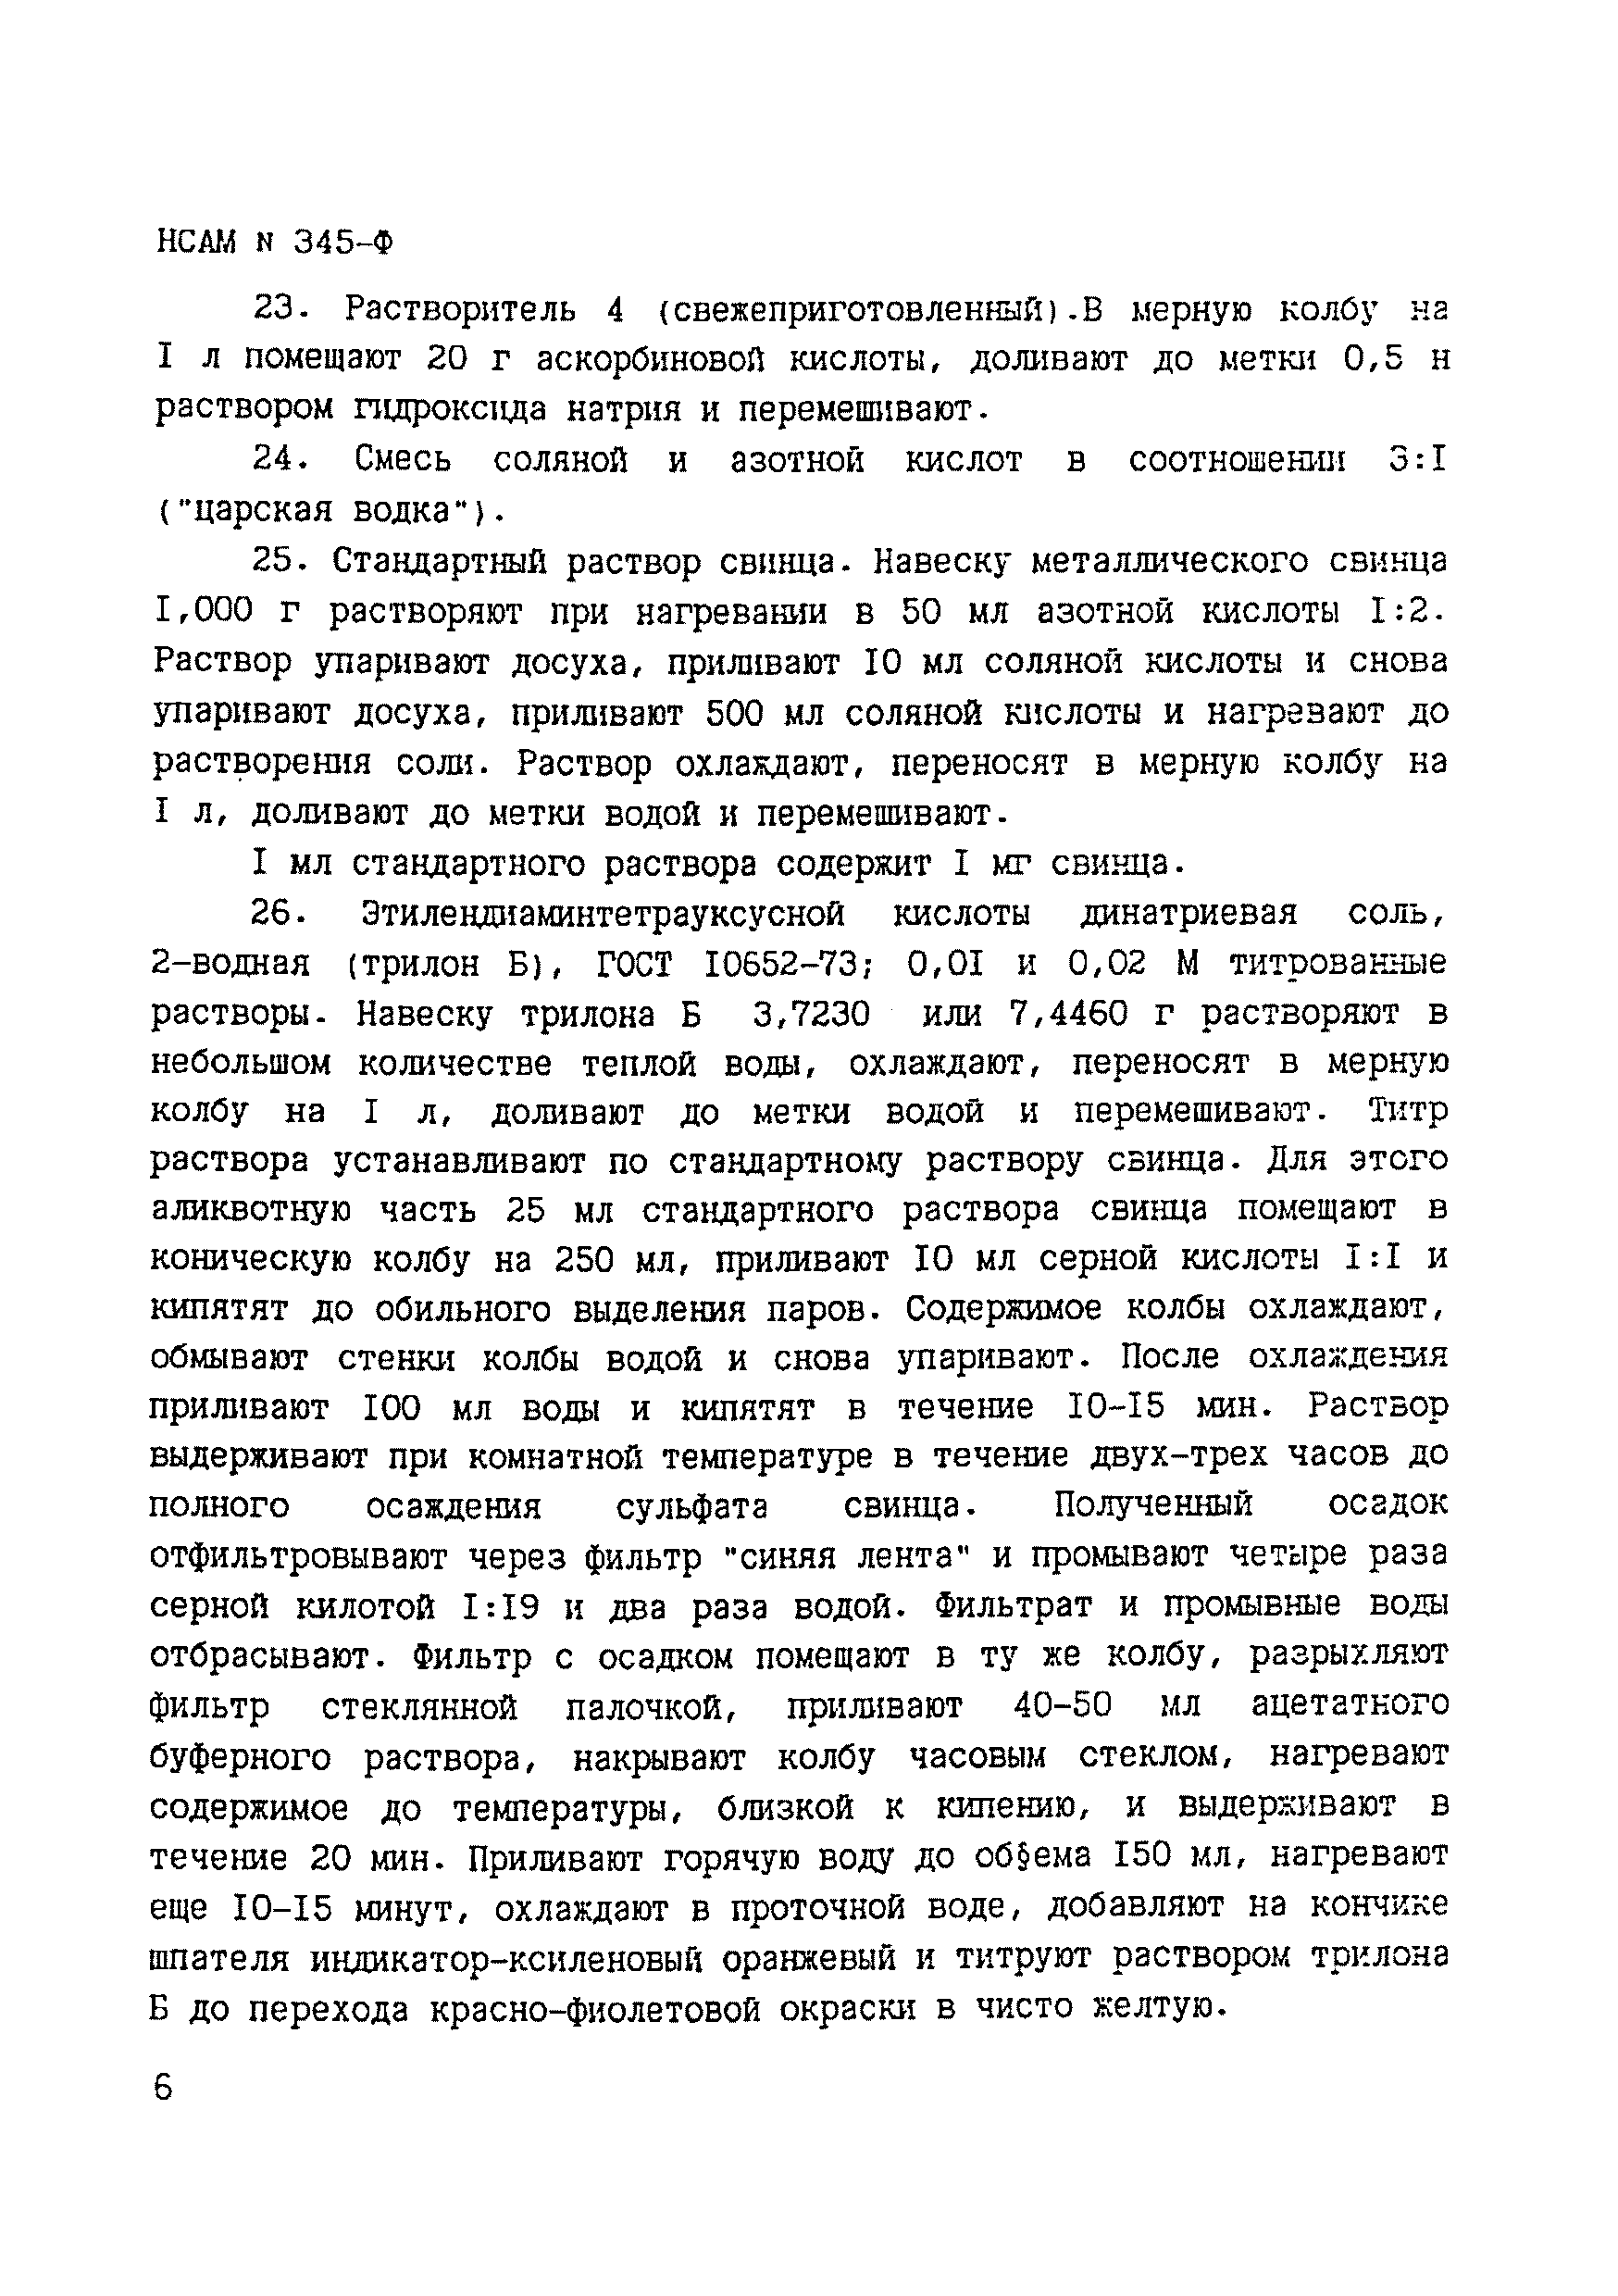 Инструкция НСАМ 345-Ф